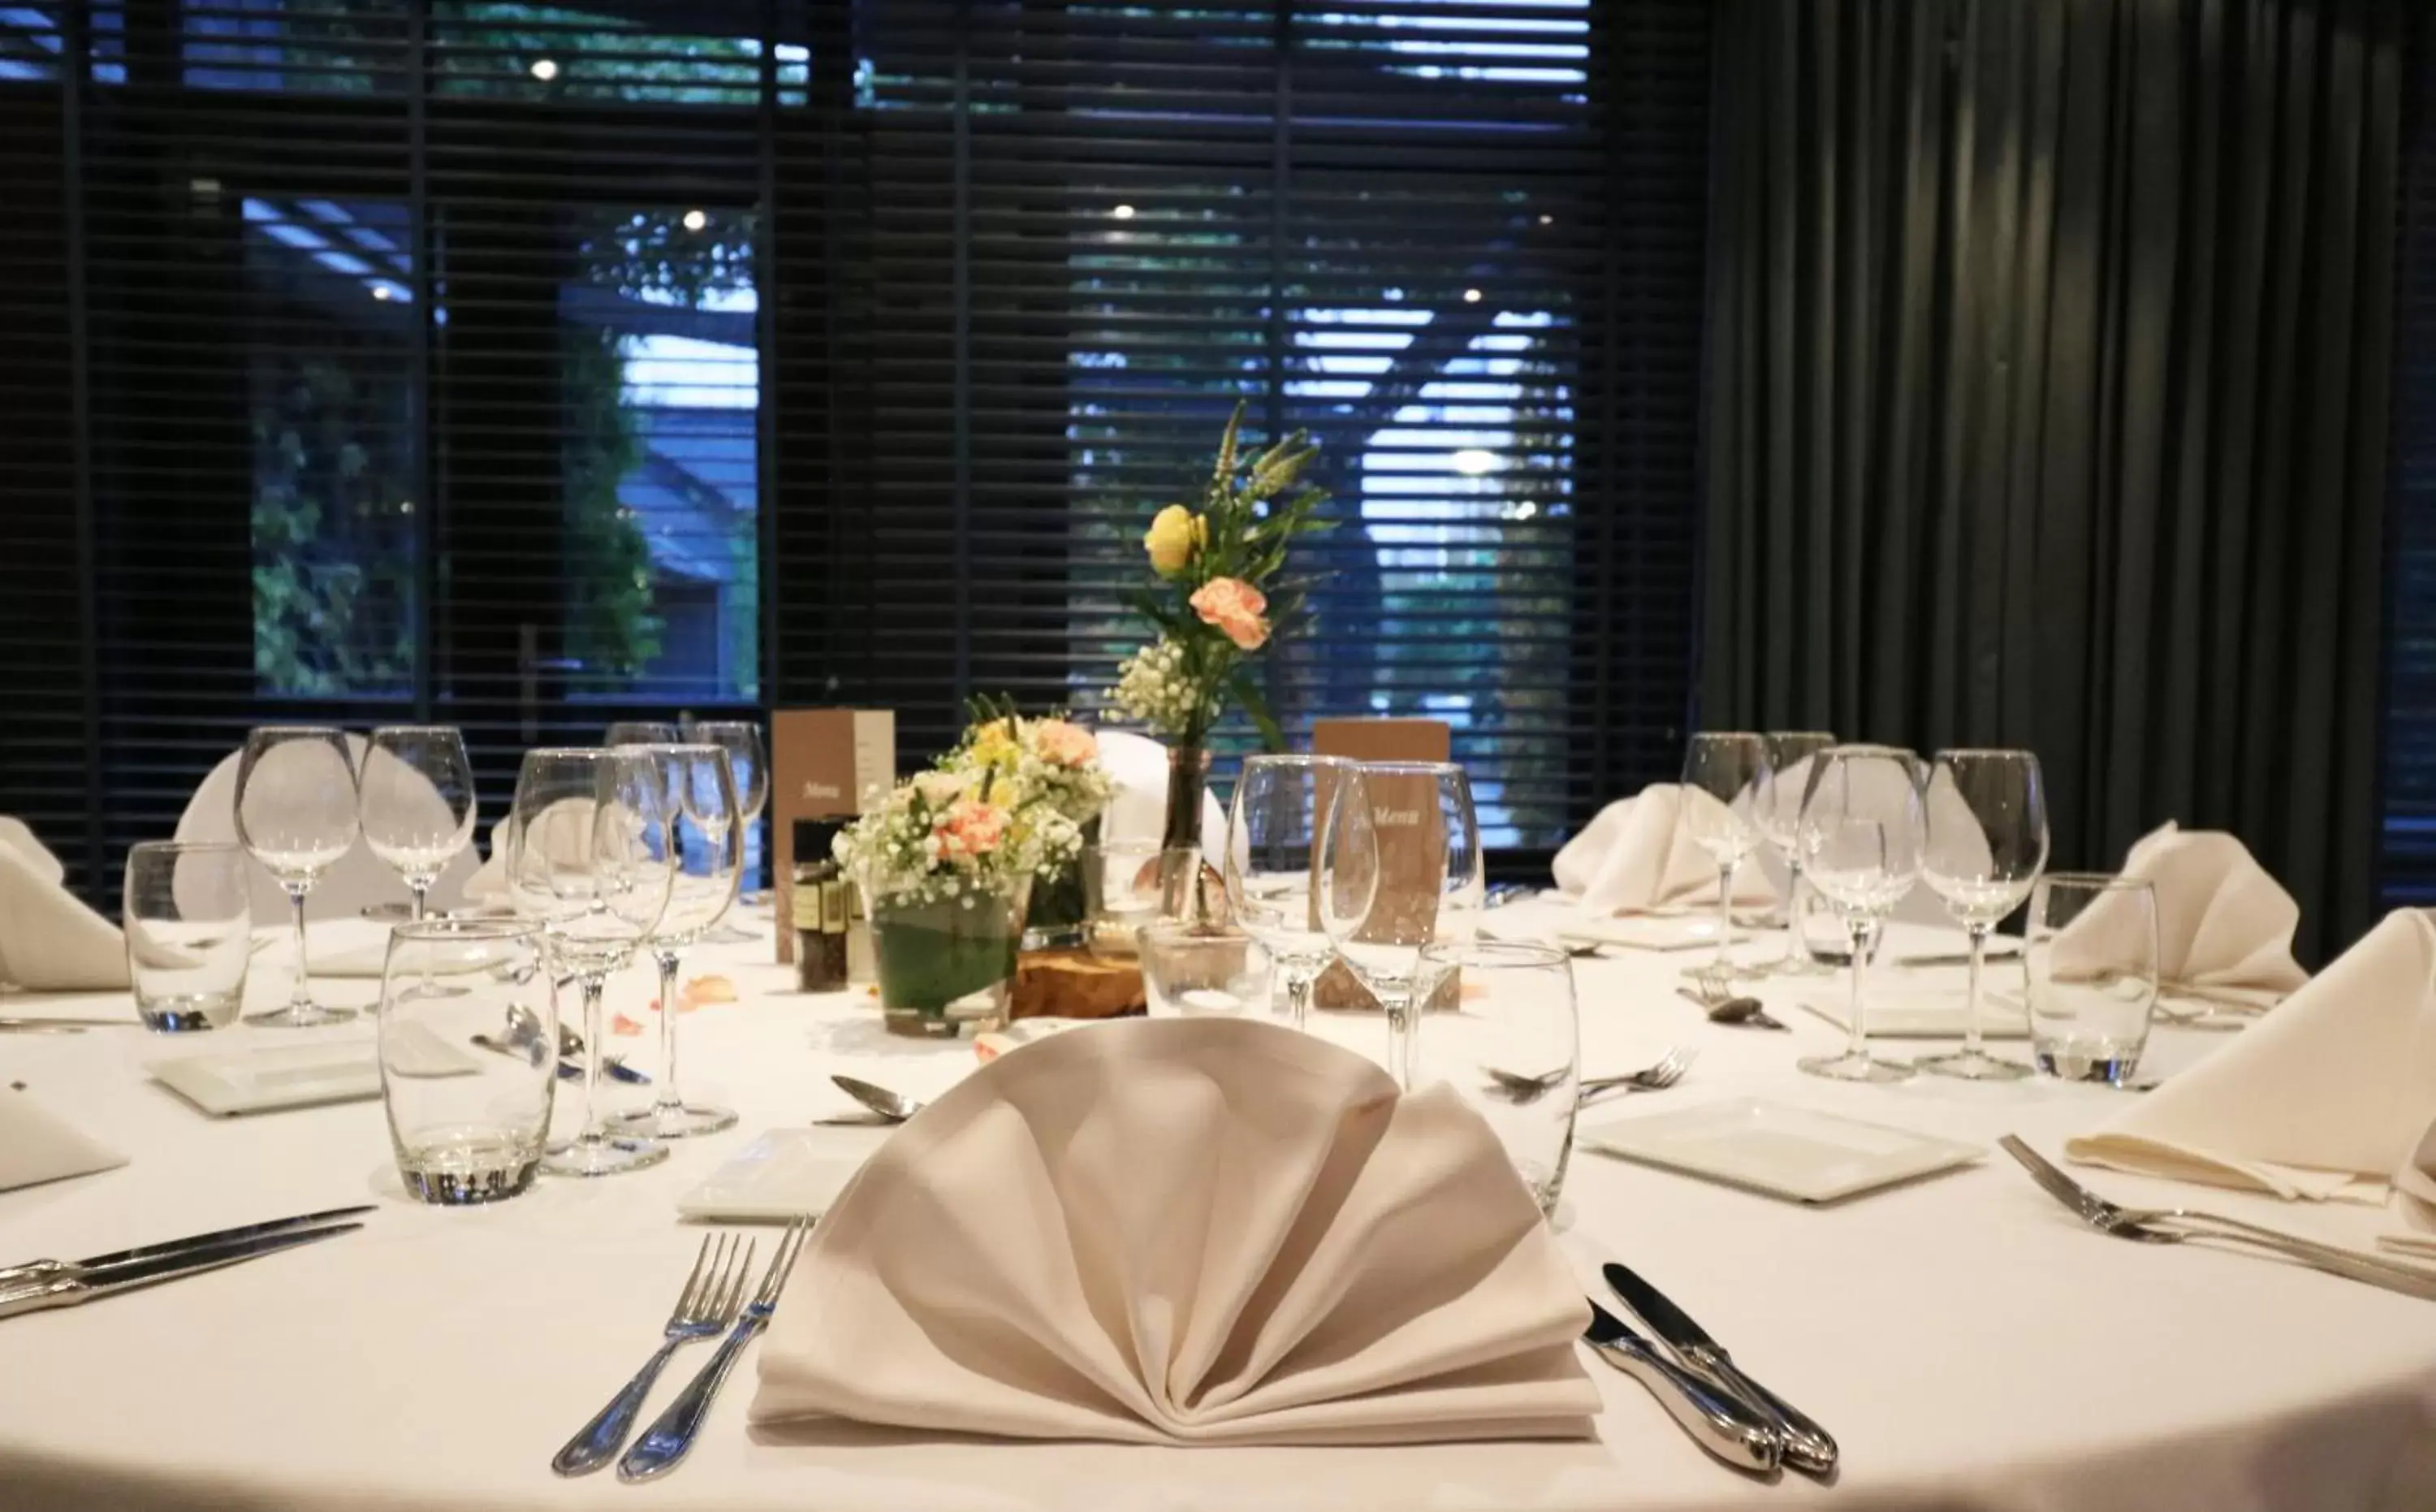 Banquet/Function facilities, Restaurant/Places to Eat in Van der Valk Hotel Beveren